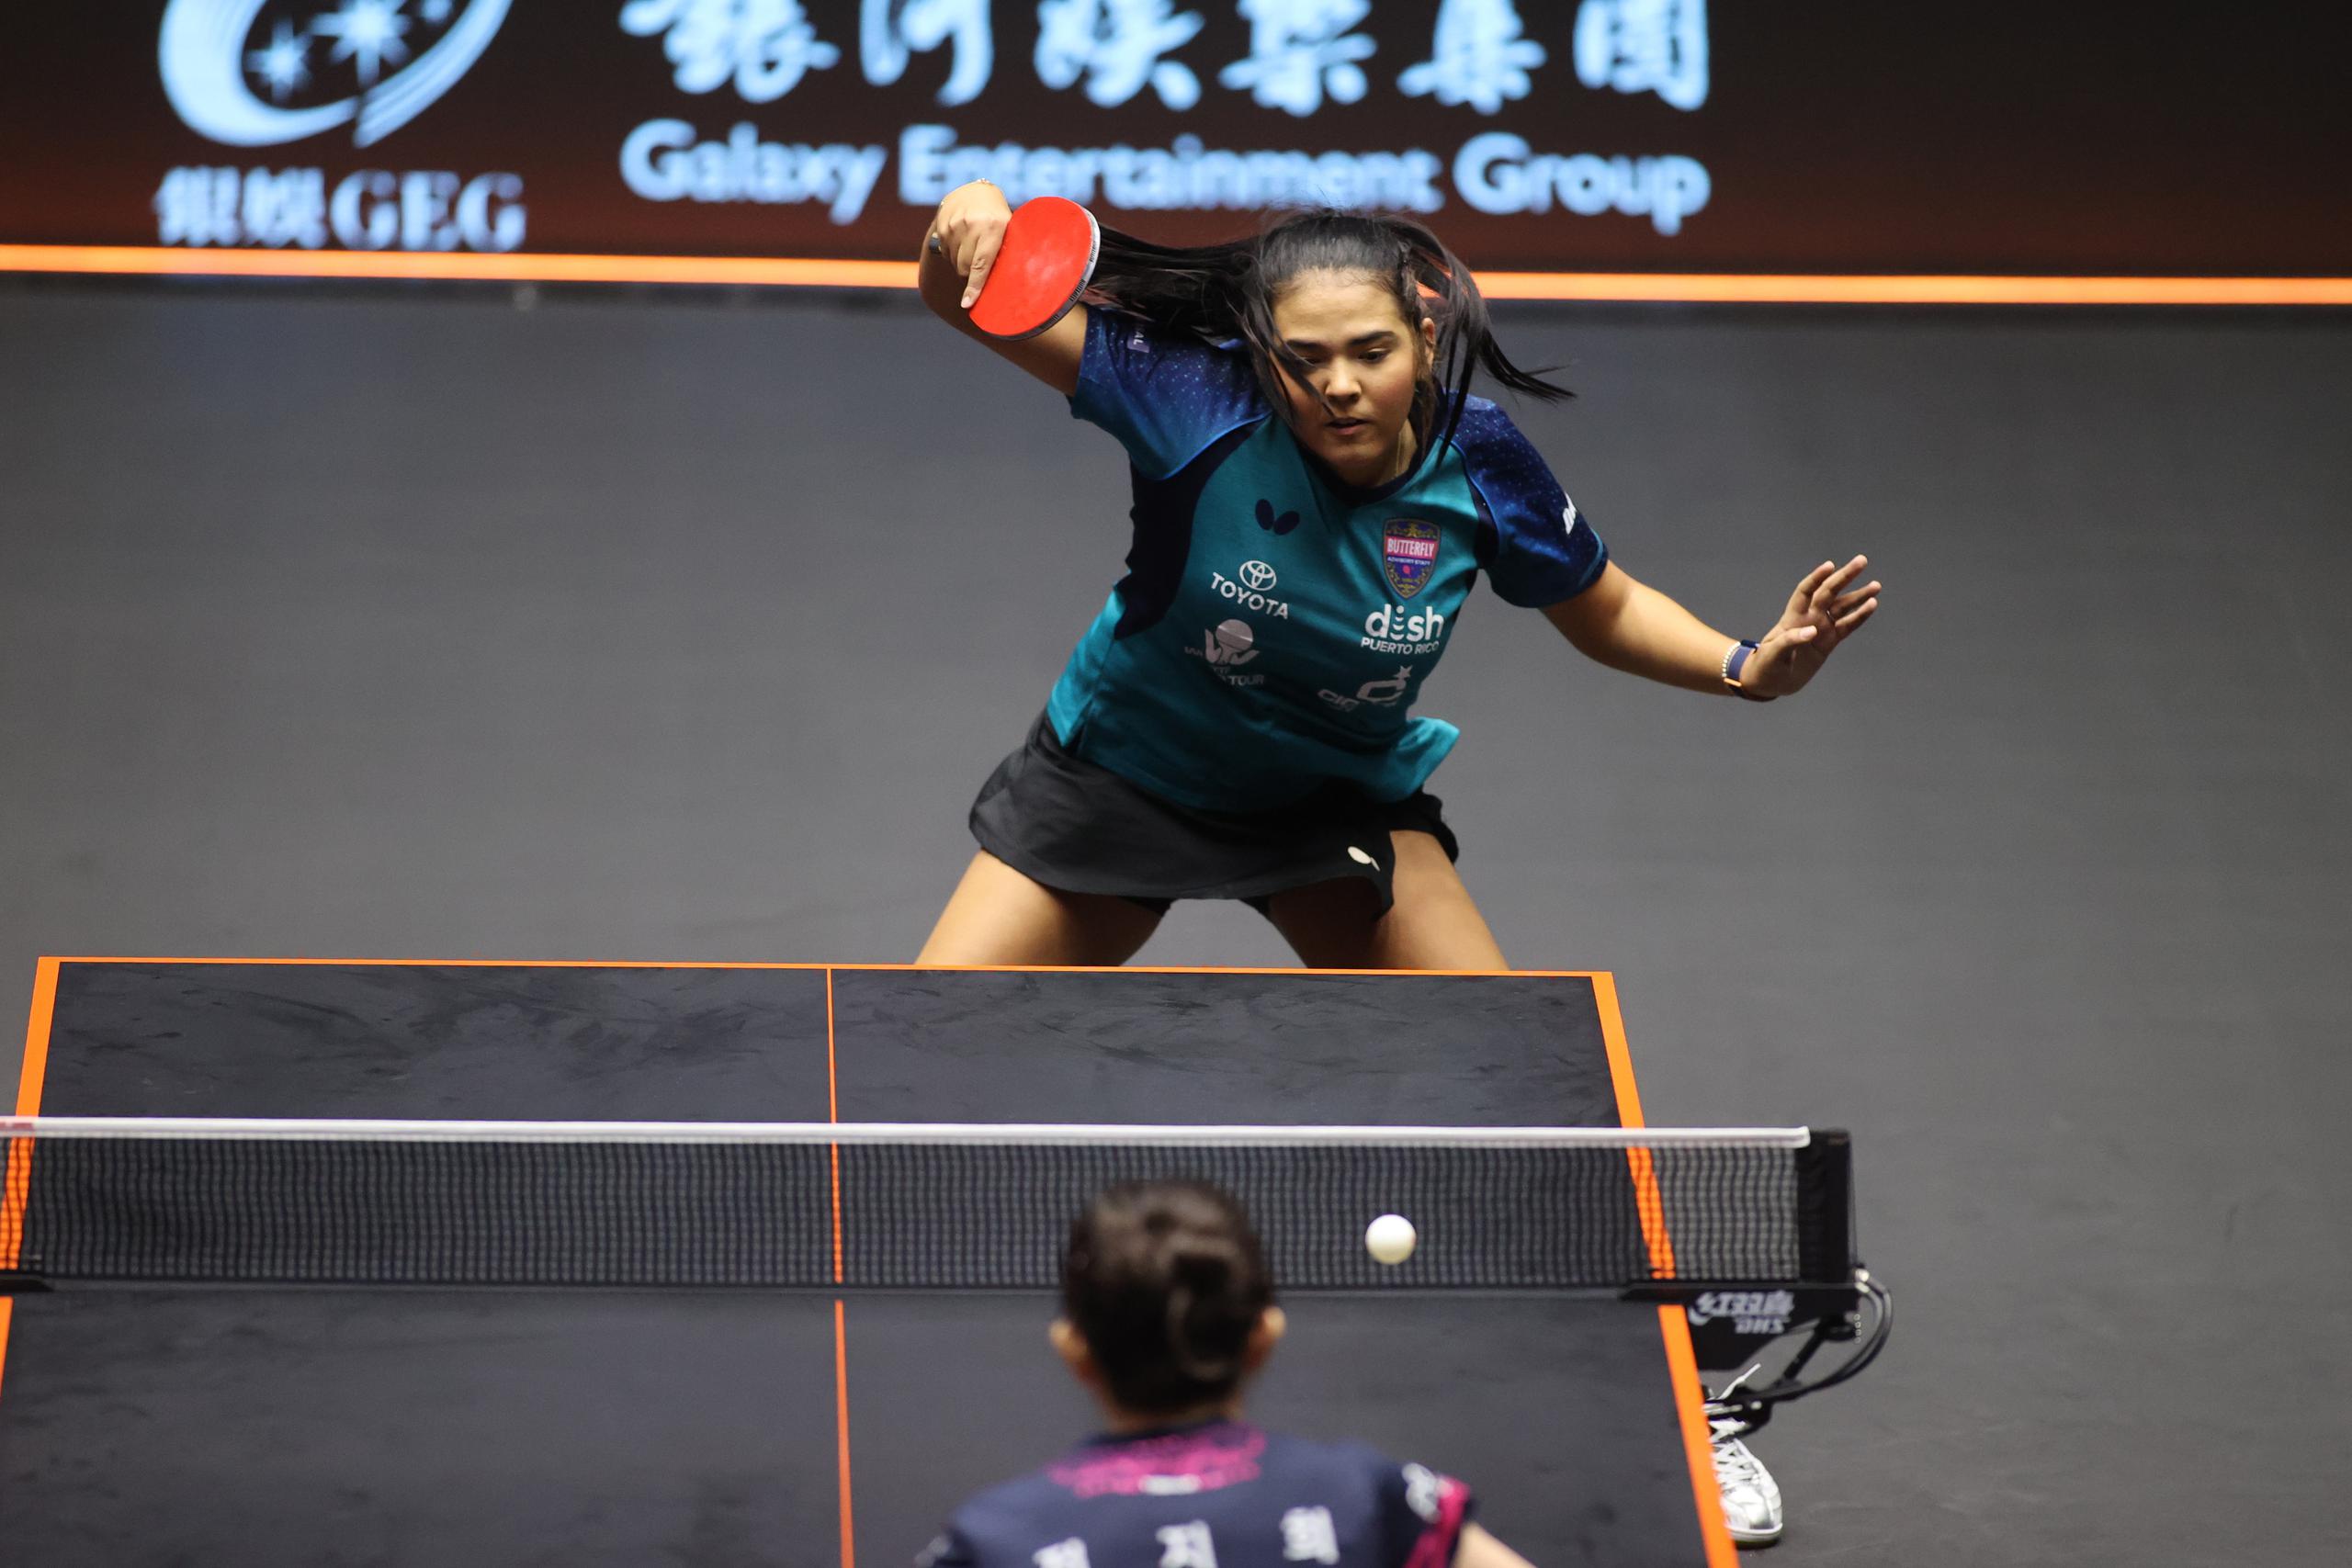 El primer choque del torneo para Adriana Díaz, clasificada número 11 en el mundo, será ante la 13ra clasificada, la china Xingtong Chen.